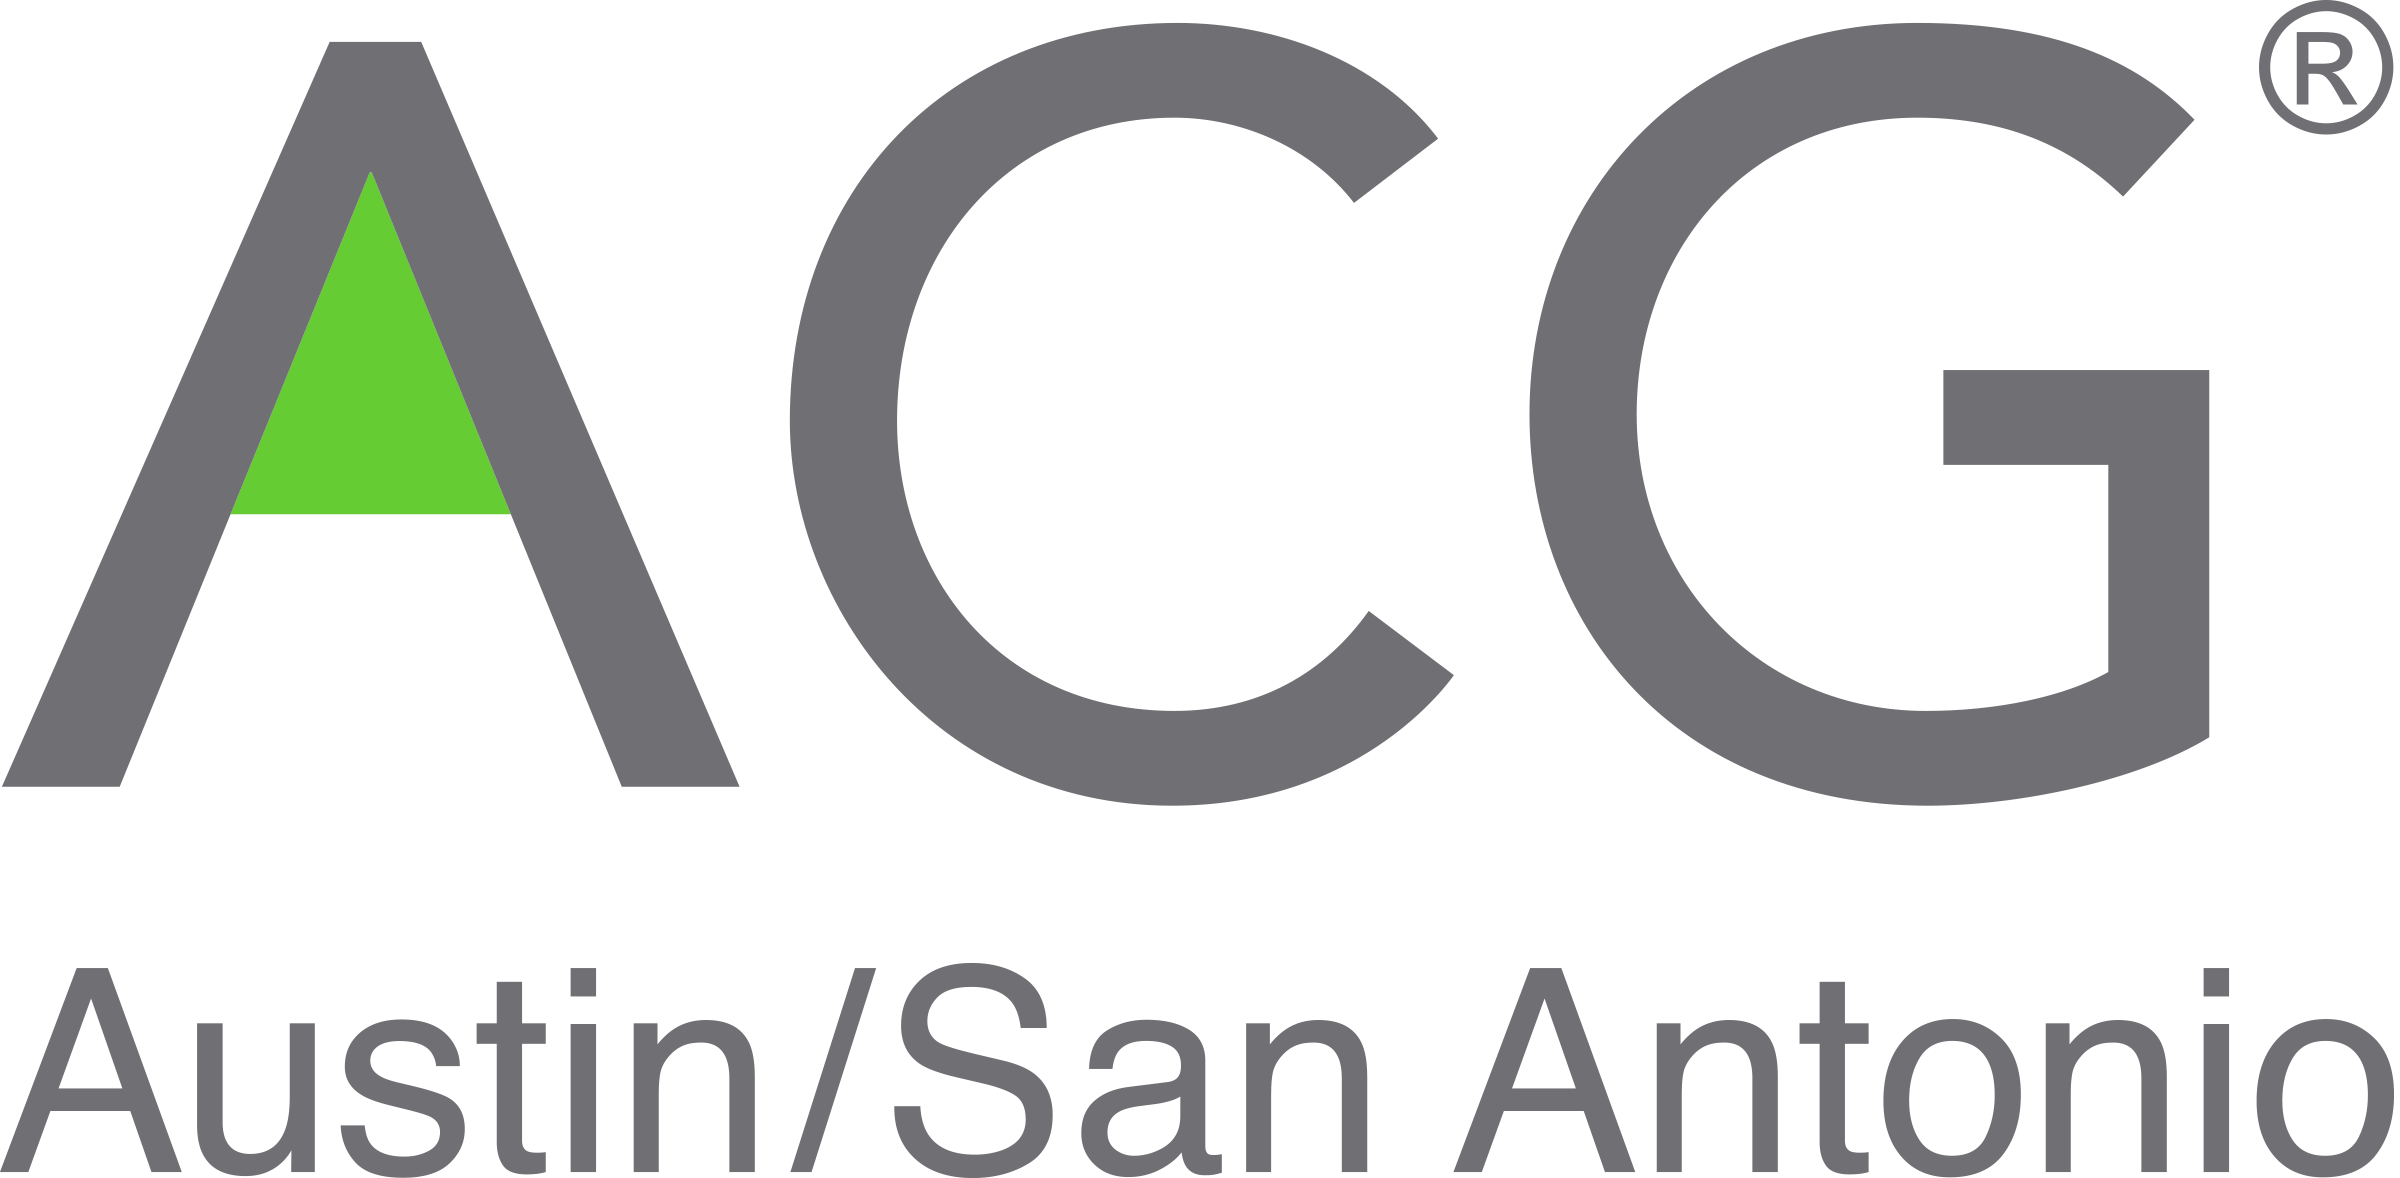 ACG Austin/San Antonio Growth Awards